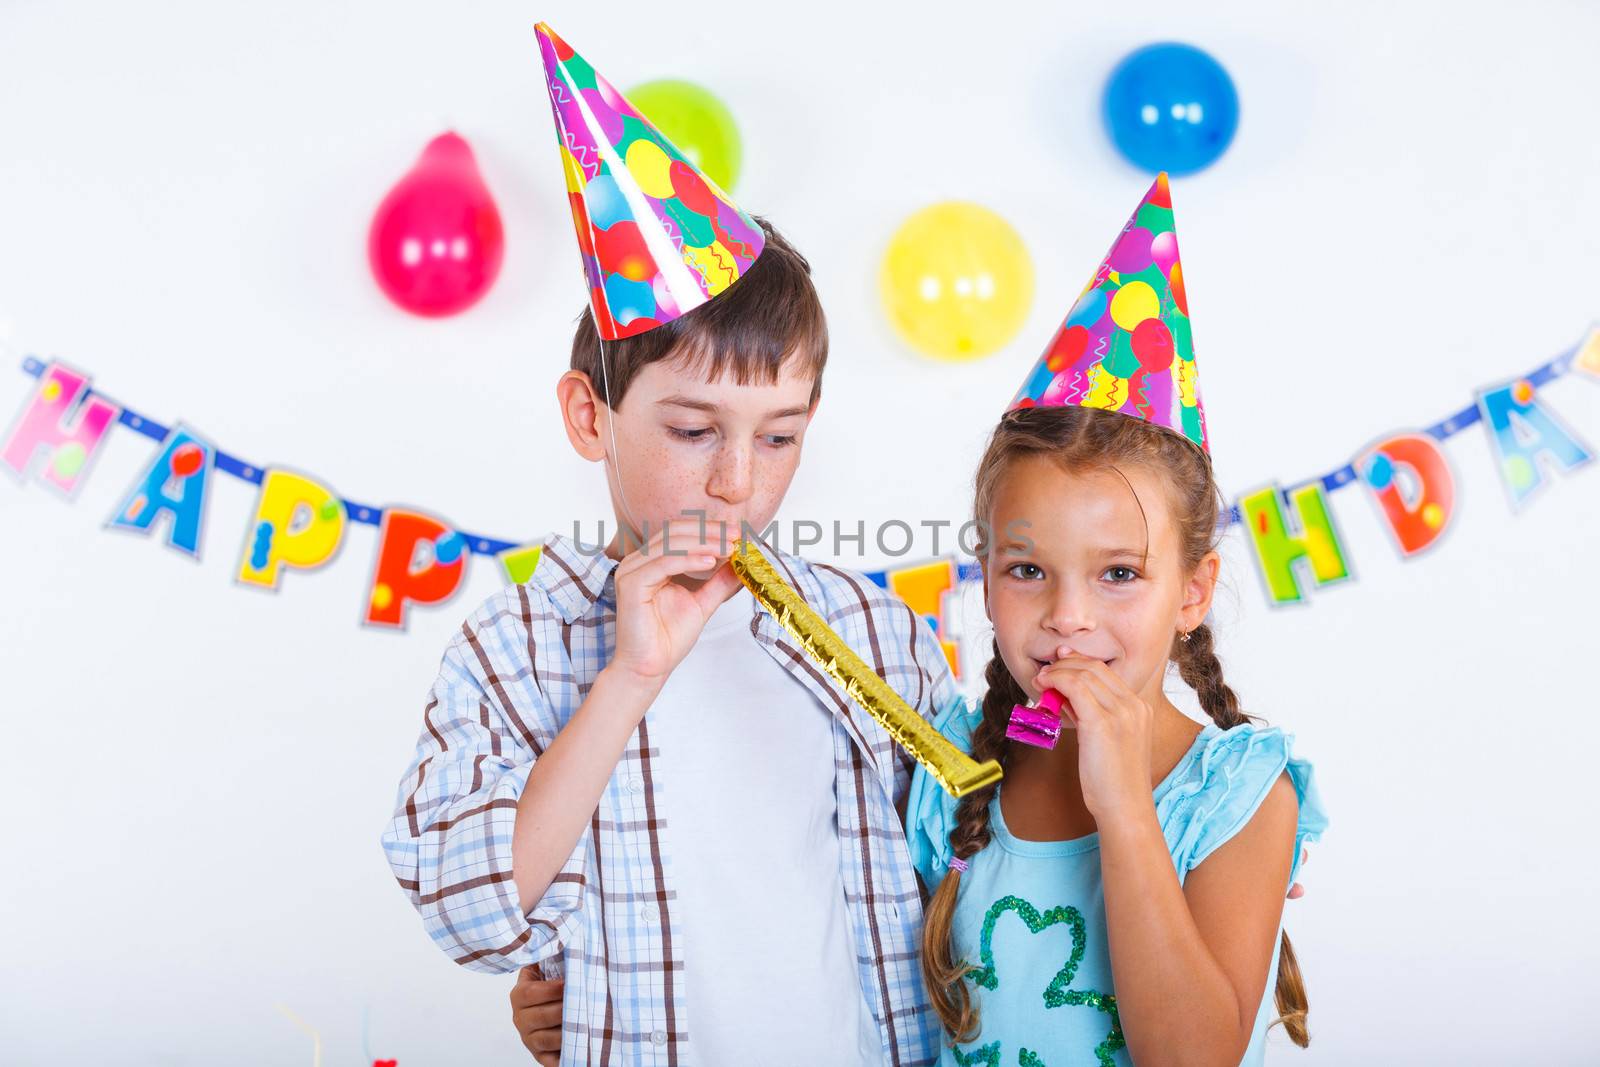 Kids at birthday party by maxoliki